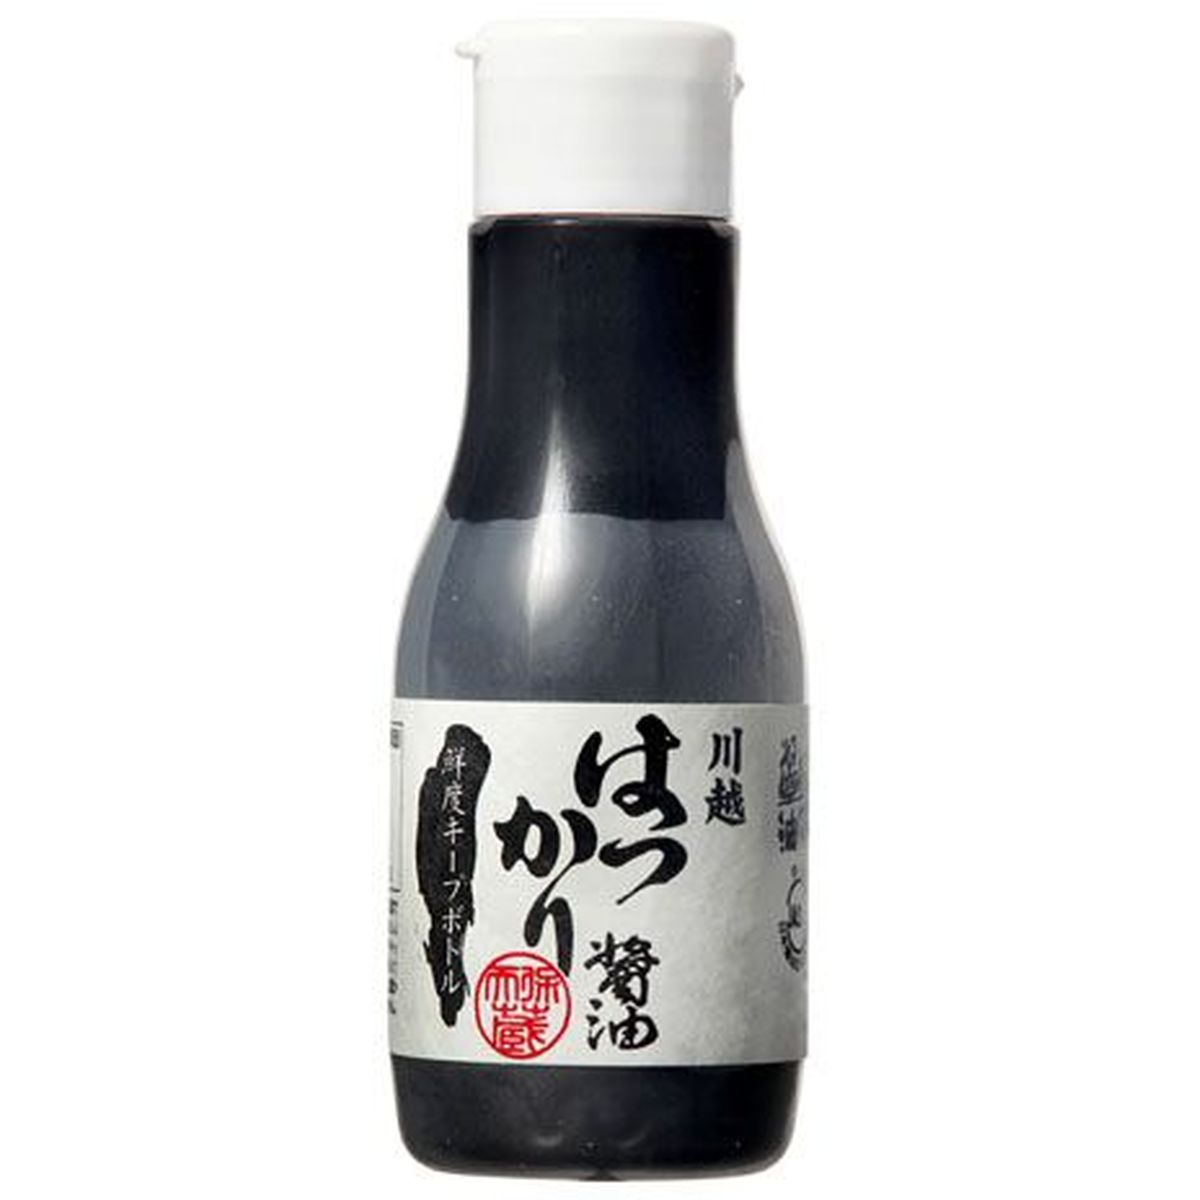 【20個入リ】松本醤油 ハツカリ醤油 鮮度キープボトル 200ml